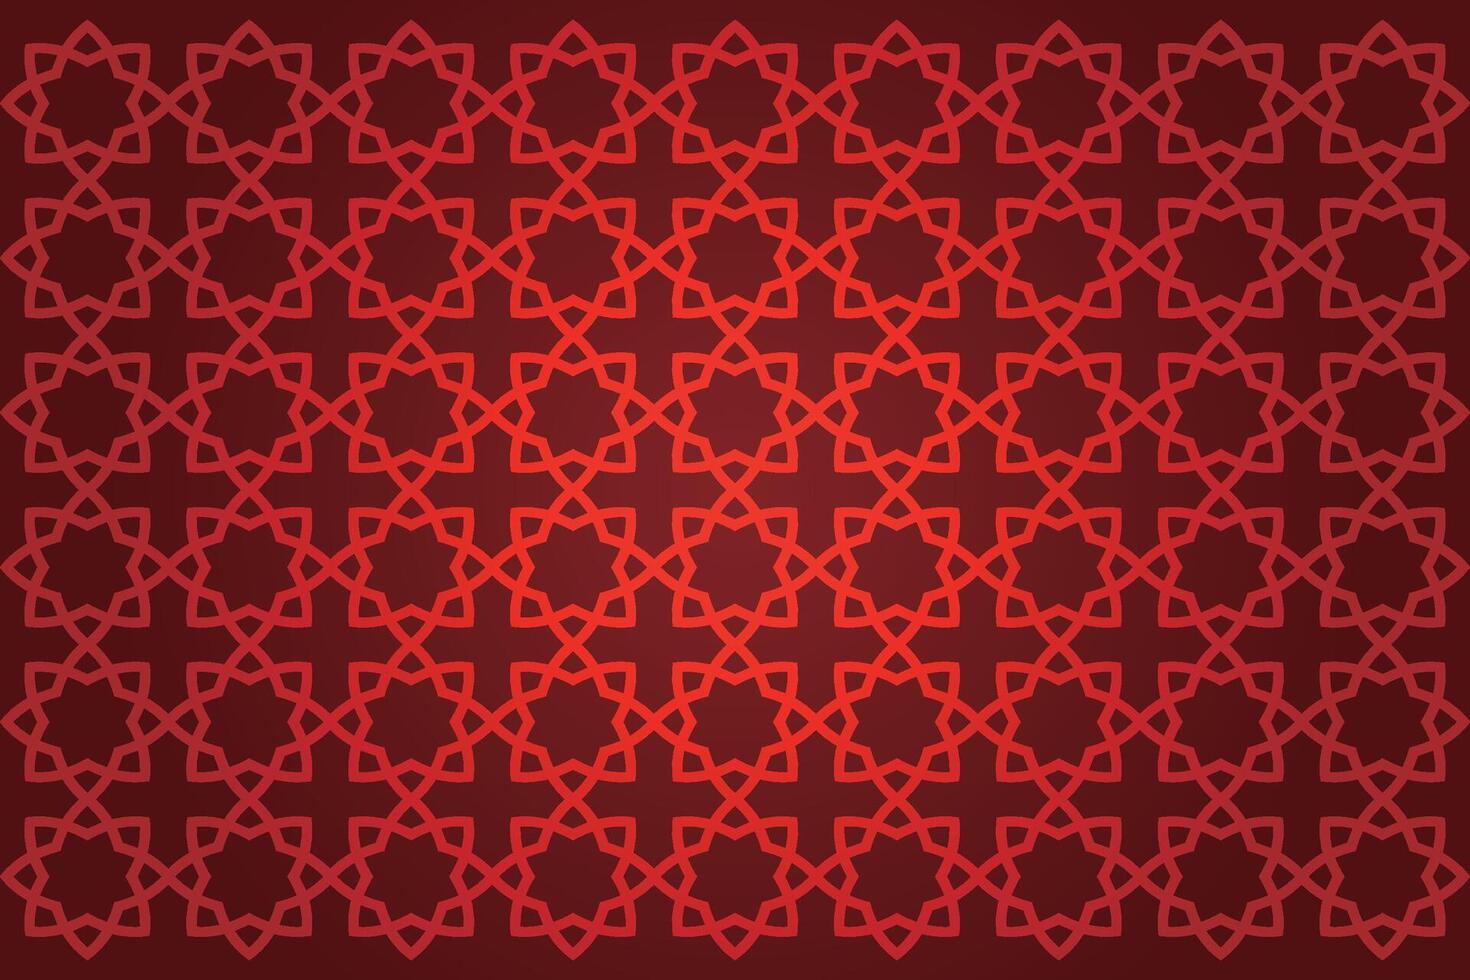 Mitte östlichen Arabisch Muster Hintergrund vektor